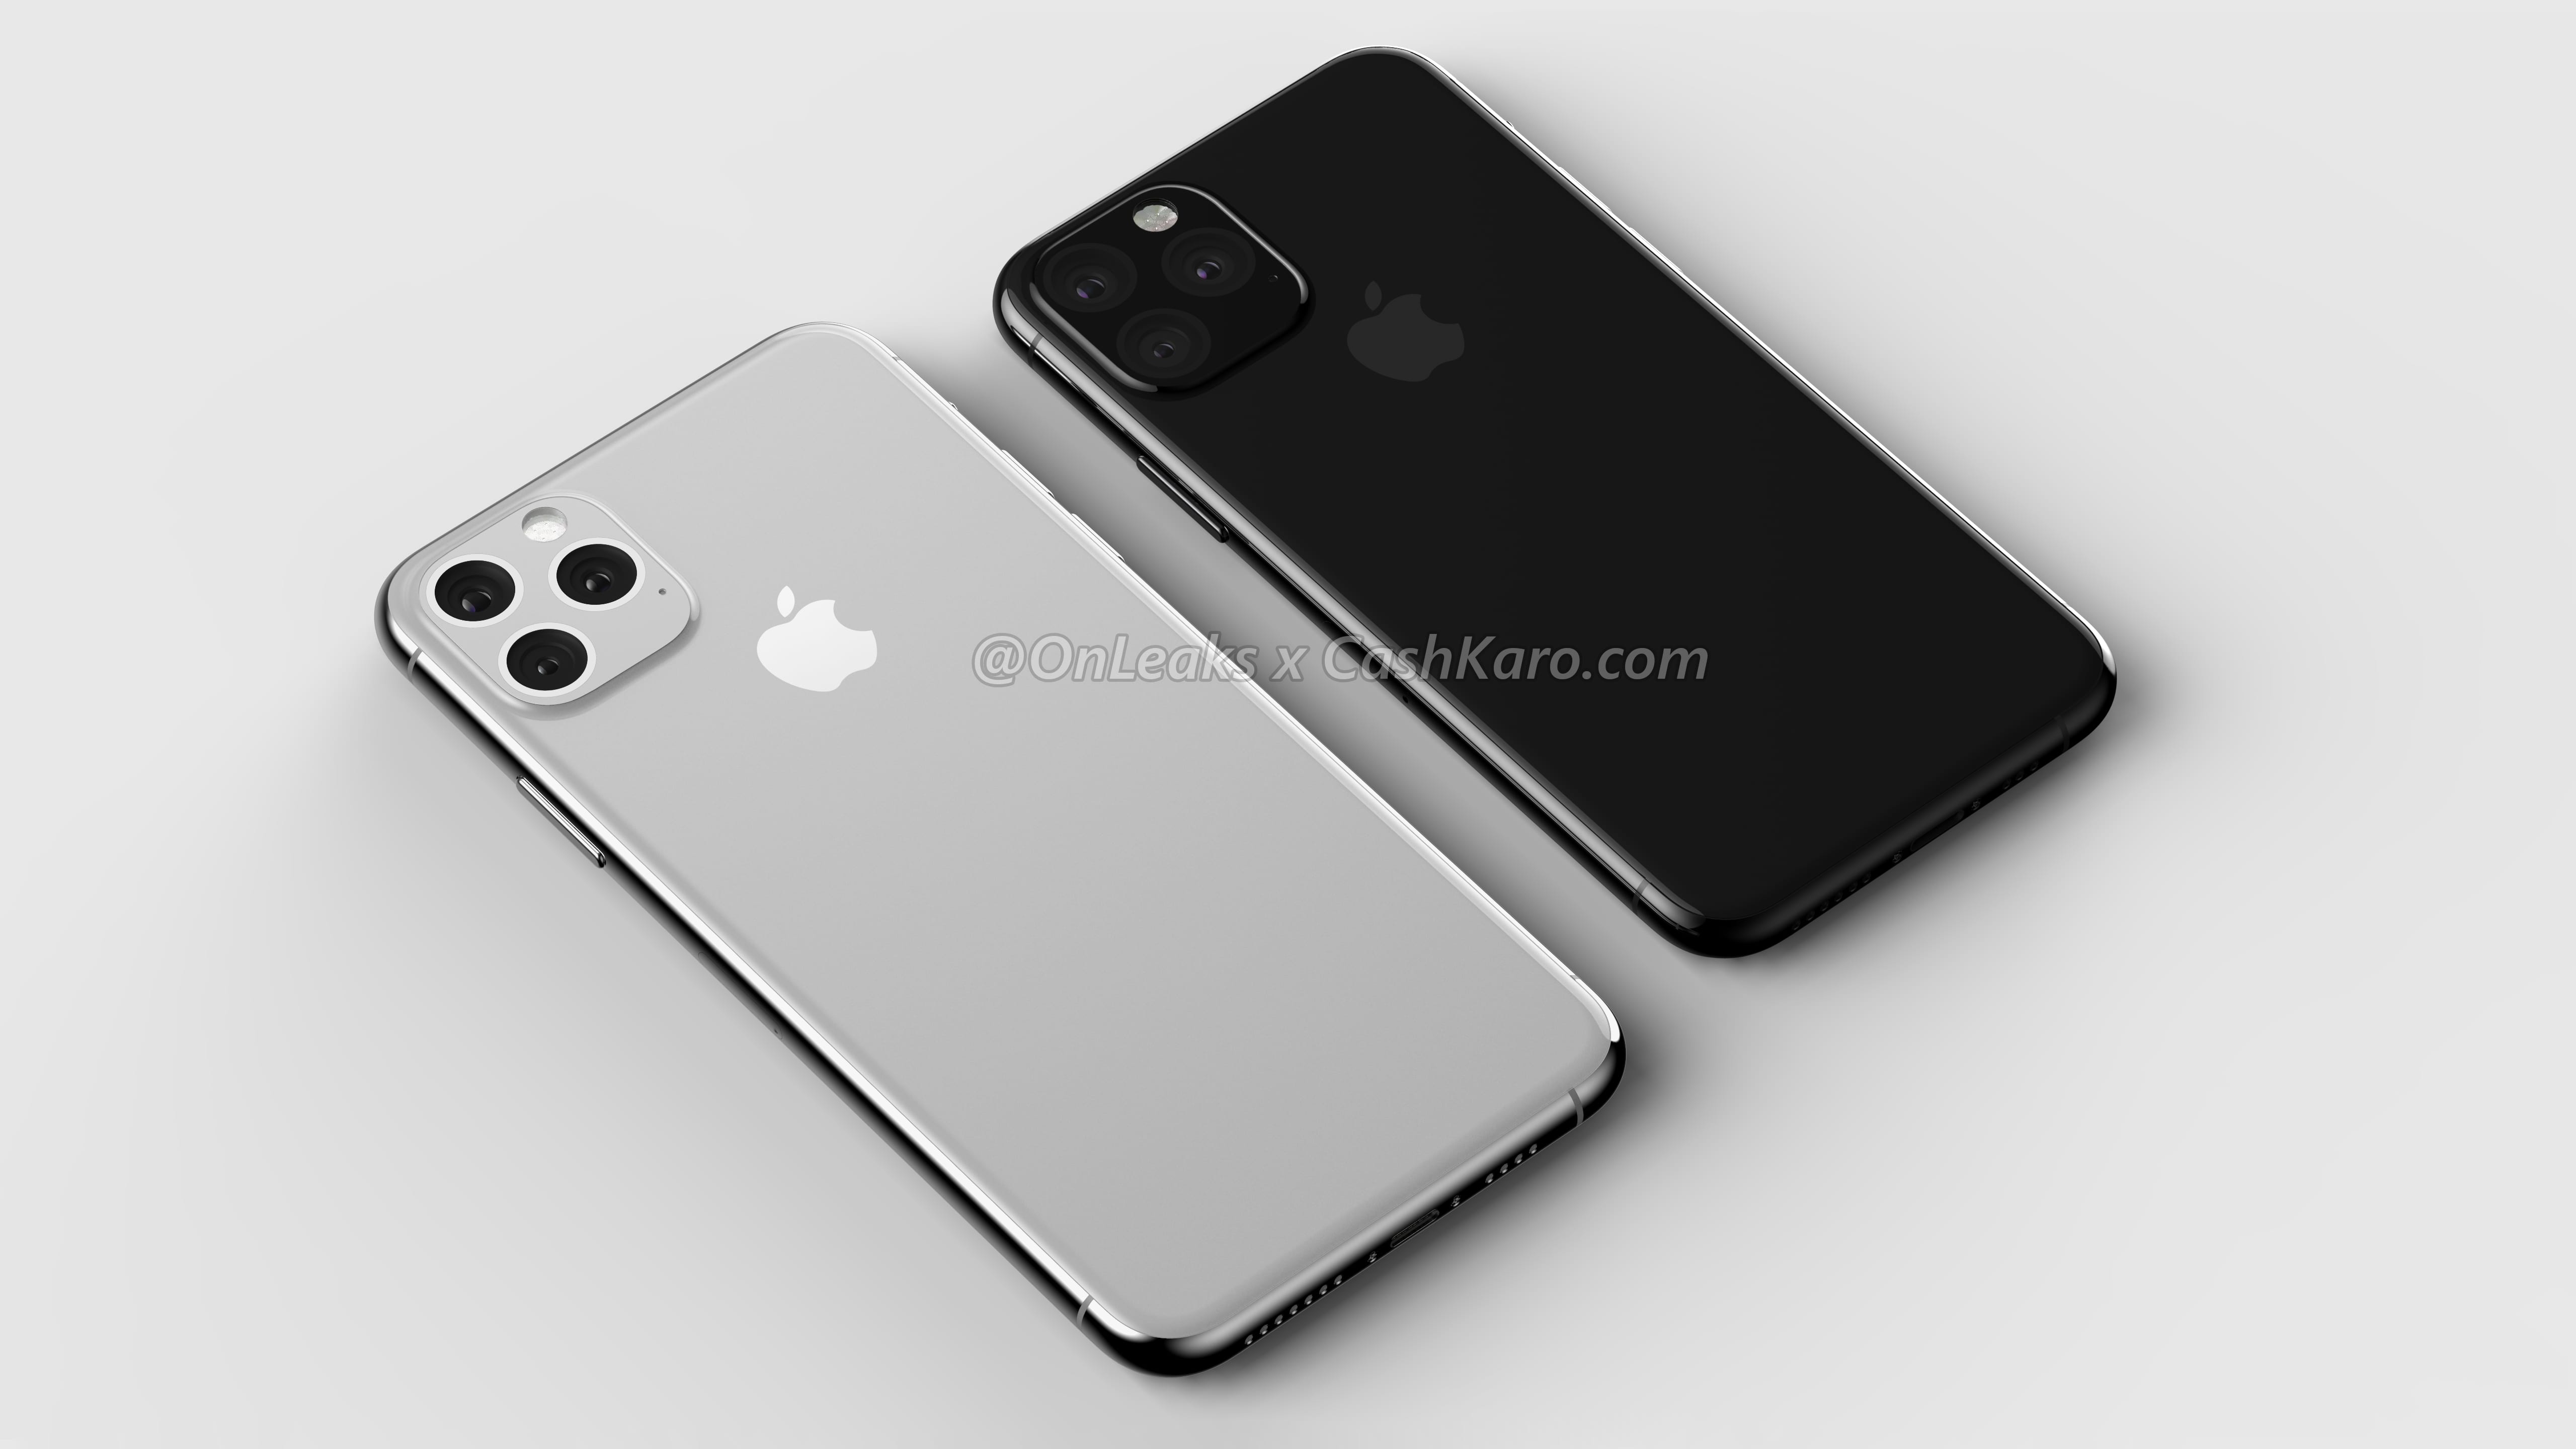 Apple iPhone 2019 Max rendery Onleaks plotki przecieki kiedy premiera wycieki Foxconn masowa produkcja iOS